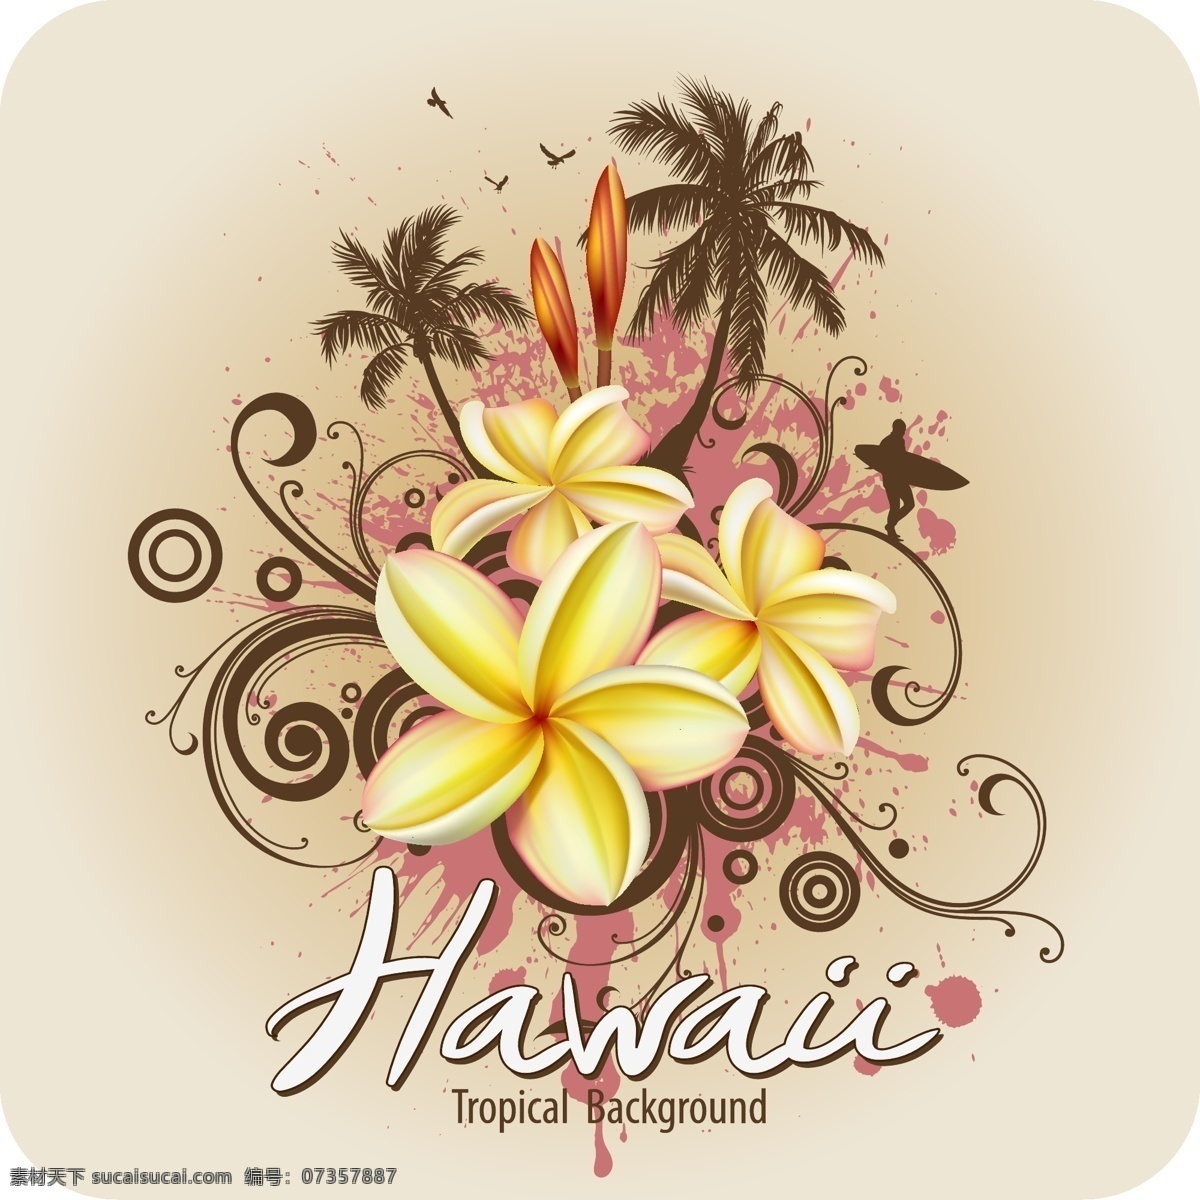 矢量 潮流 热带 花朵 椰树 背景 海报 花纹 旅游 夏威夷 宣传海报 热带天堂 宣传单 彩页 dm